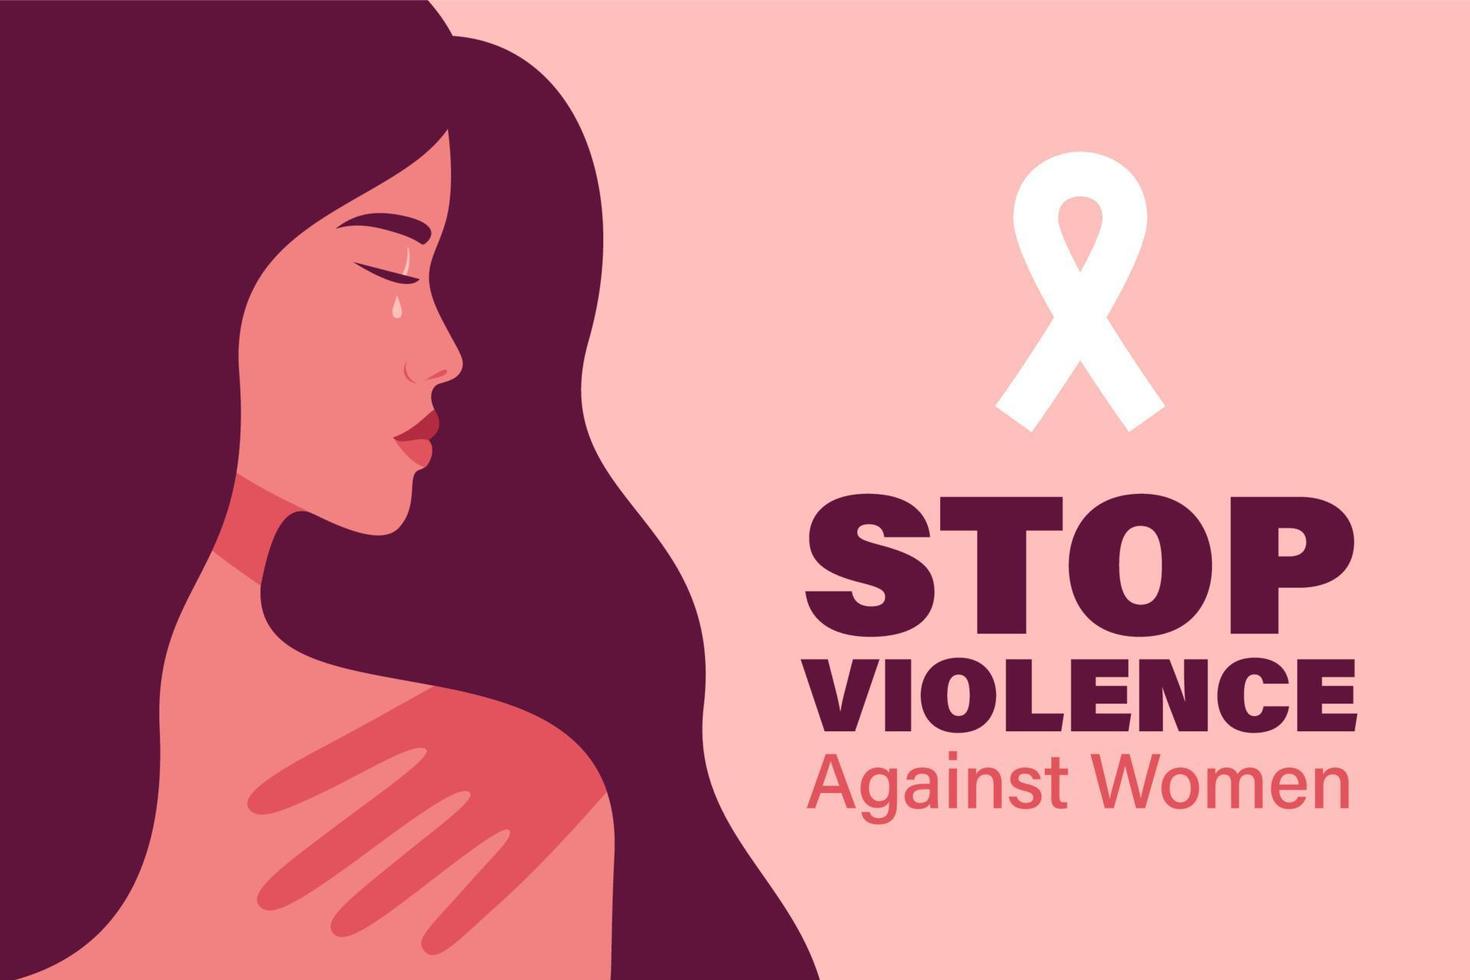 internationale dag voor de uitbanning van geweld tegen vrouwen vector